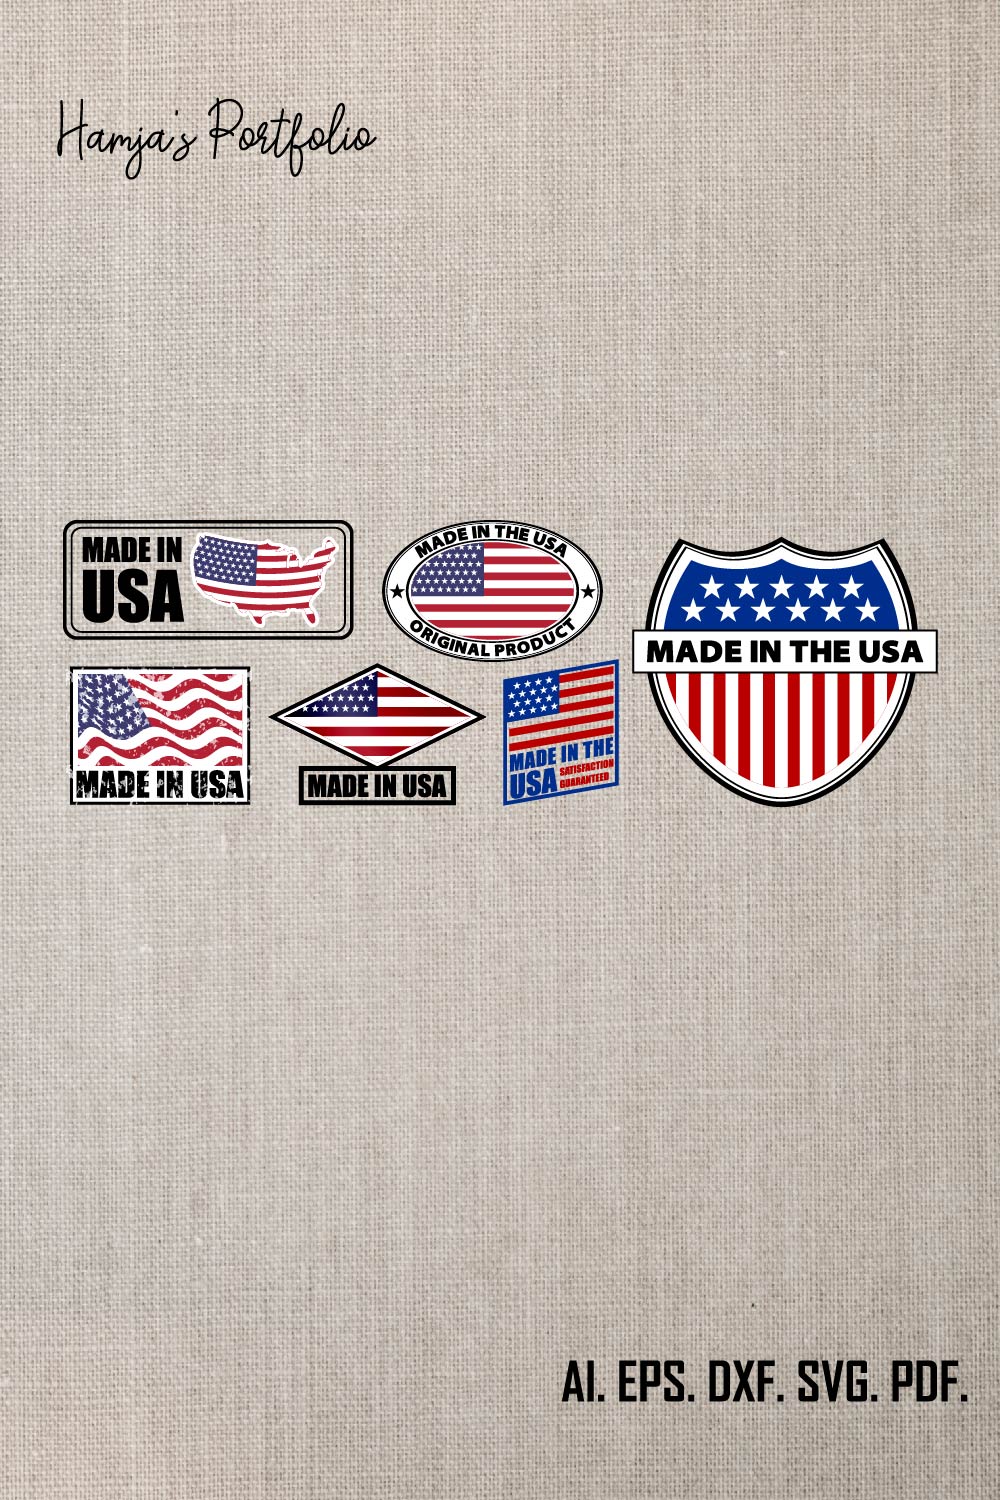 Made in USA Svg Sign With Flag, File Vector, Shirt, Mug, United States Svg, USA Clipart, Patriotic Svg, USA Svg Bundle, Svg, Jpg, Png pinterest preview image.